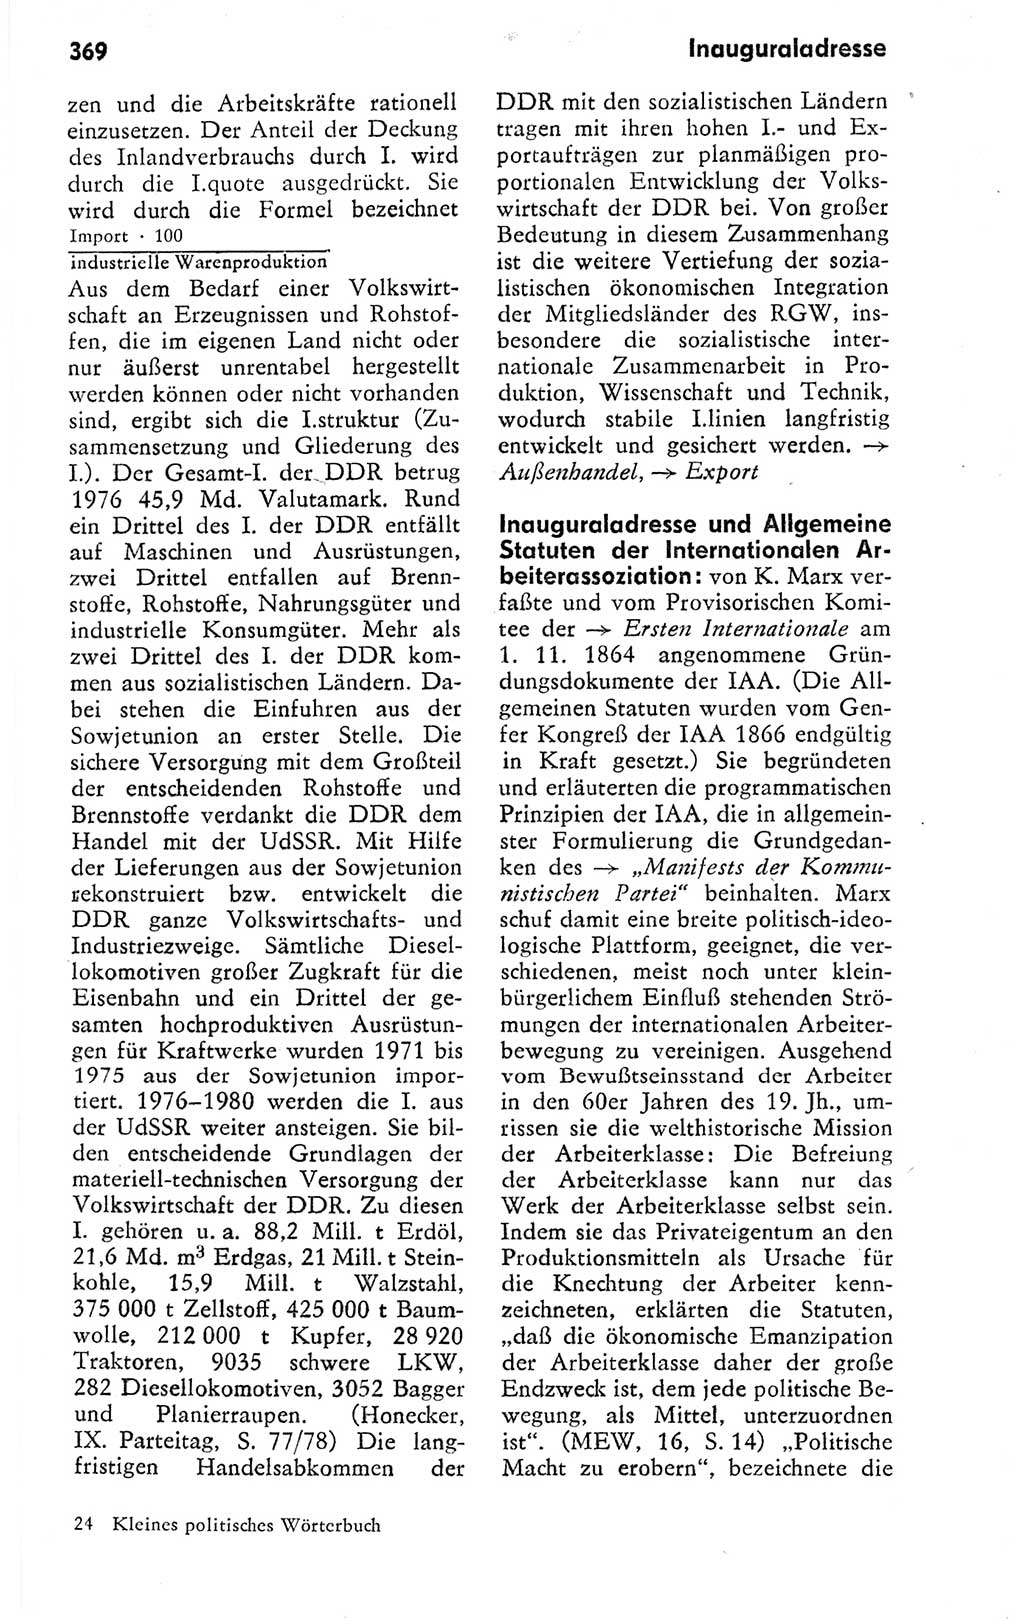 Kleines politisches Wörterbuch [Deutsche Demokratische Republik (DDR)] 1978, Seite 369 (Kl. pol. Wb. DDR 1978, S. 369)